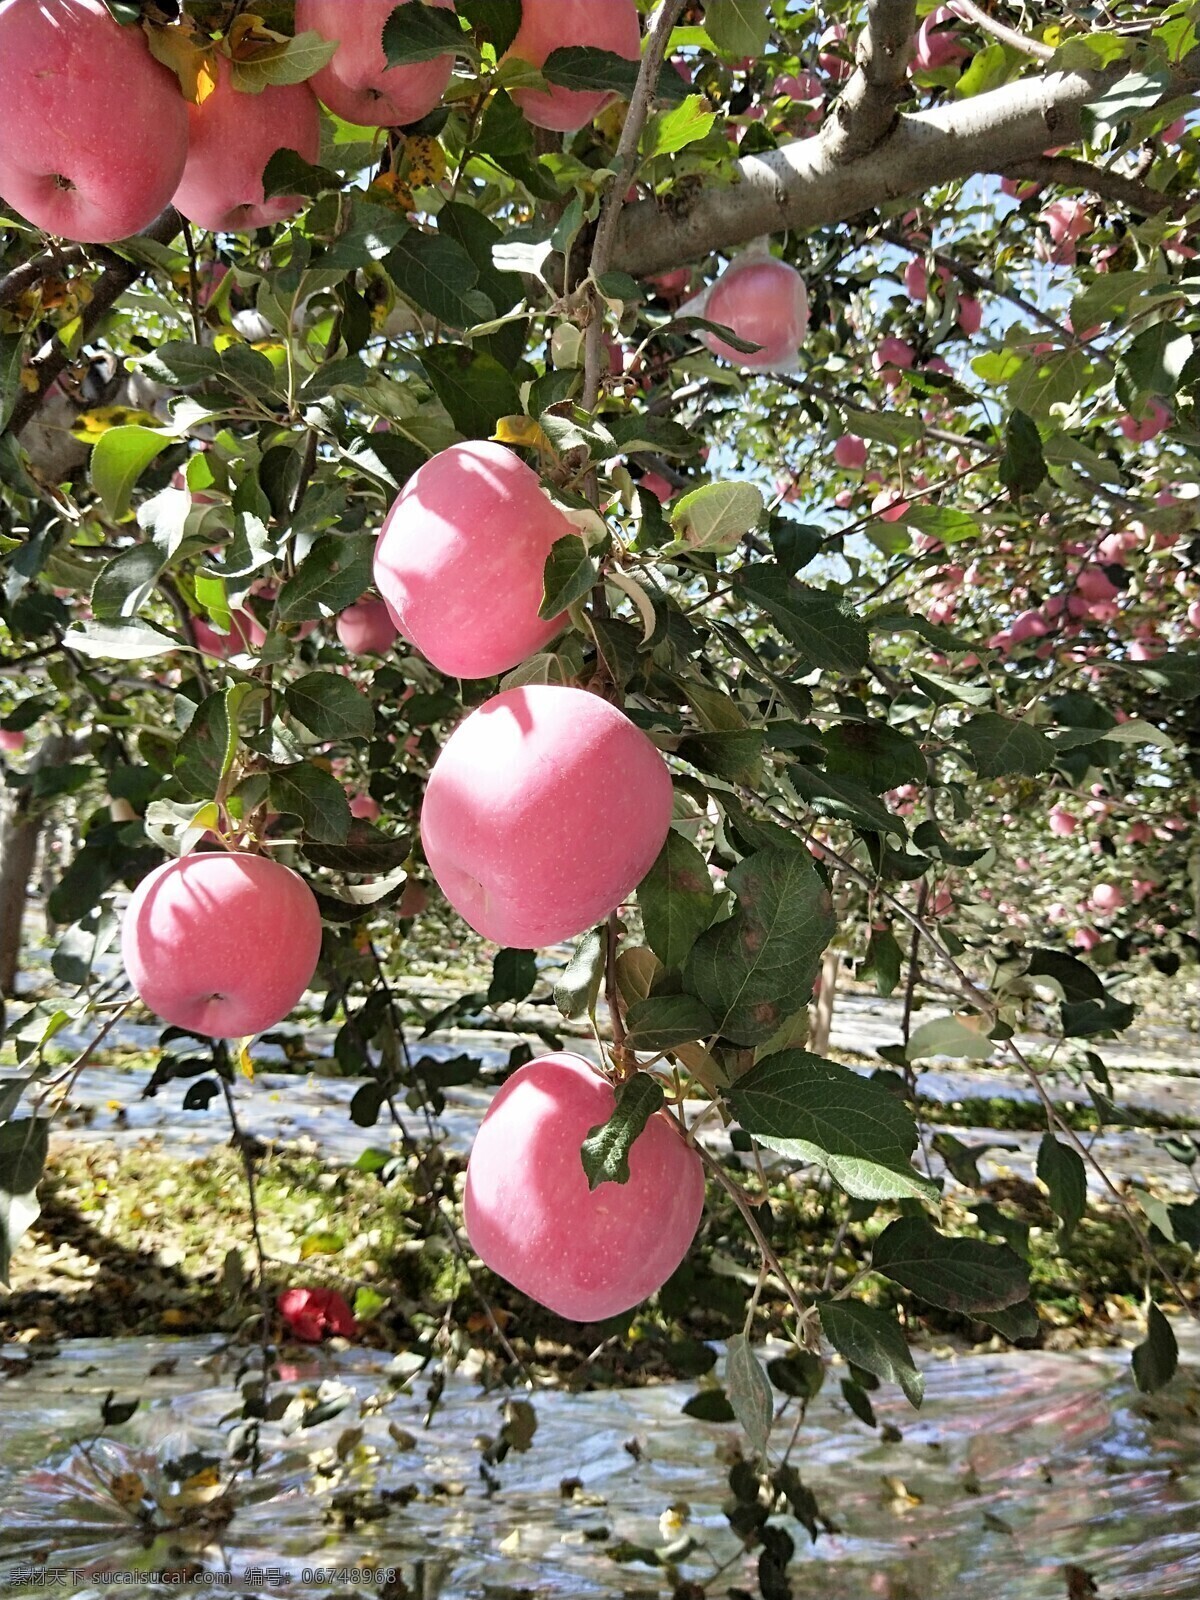 红苹果 苹果园 红富士 庆阳苹果 甘肃苹果 苹果季 自然景观 自然风光